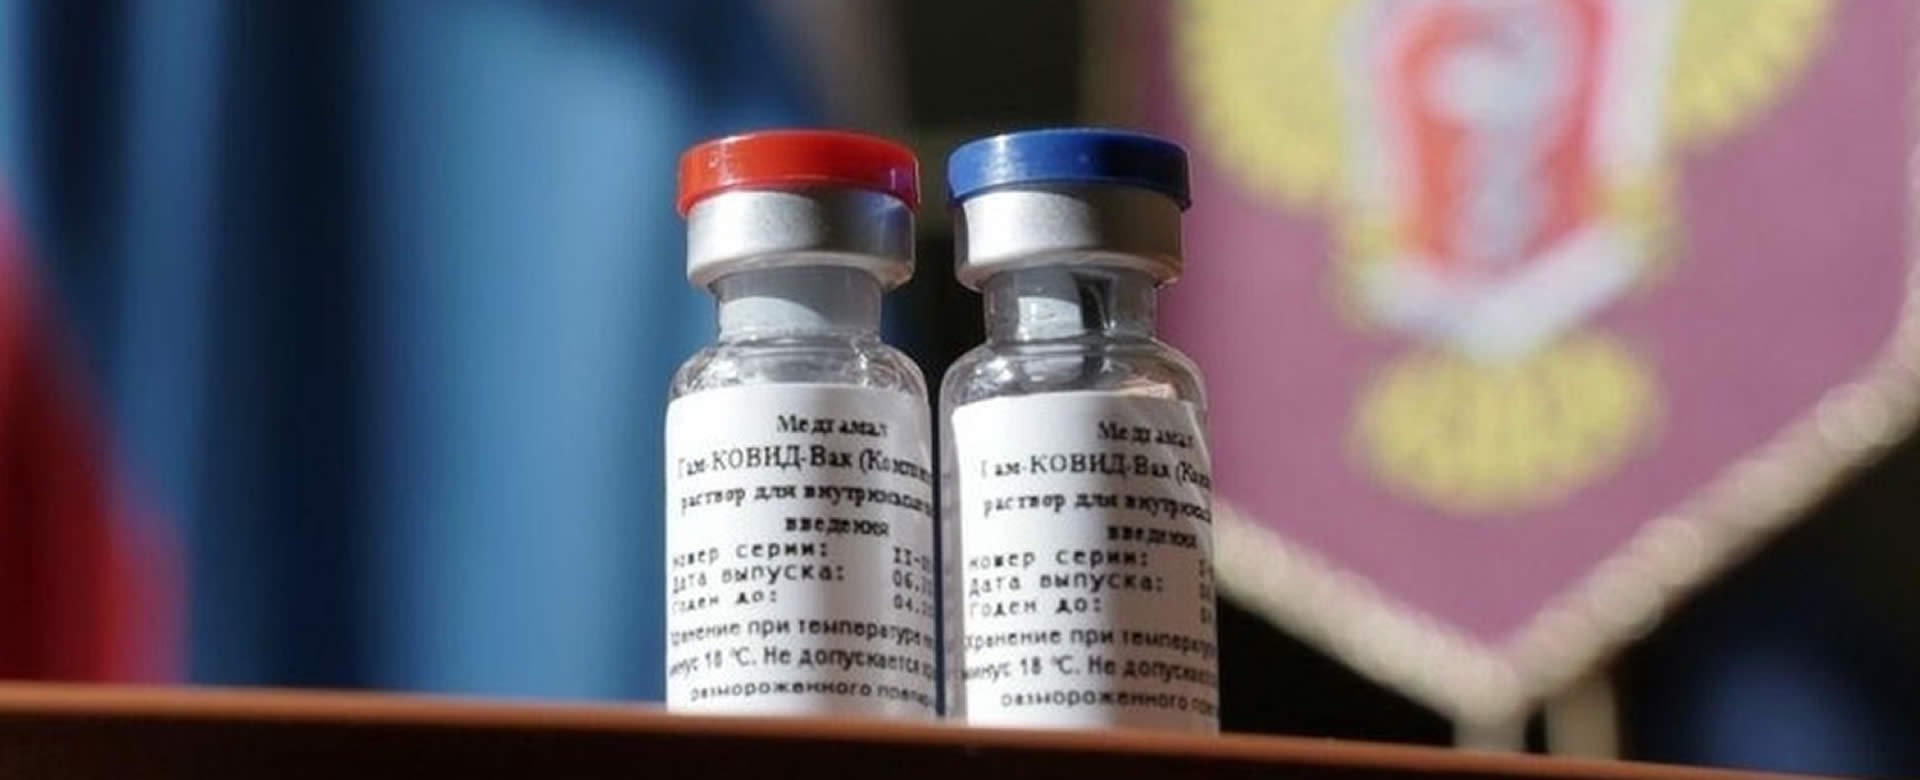 Rusia registra la primera vacuna contra el Coronavirus